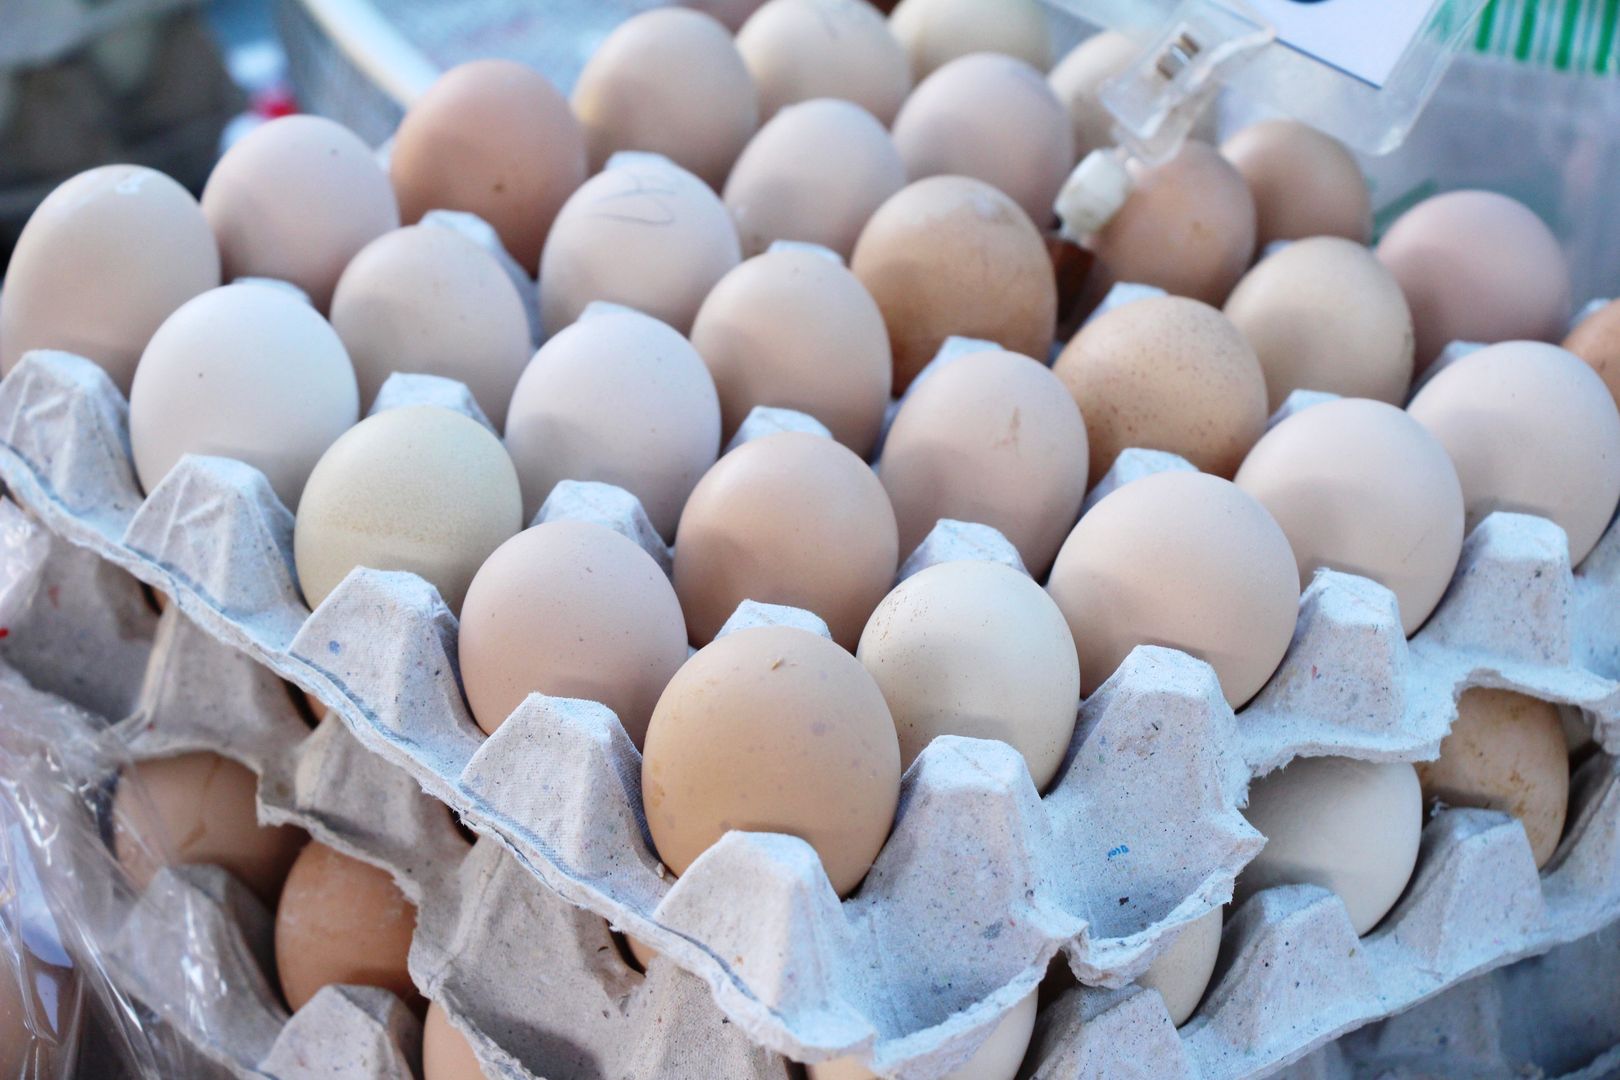 Chów nie wpływa znacznie na jakość odżywczą wybieranych przez nas jajek